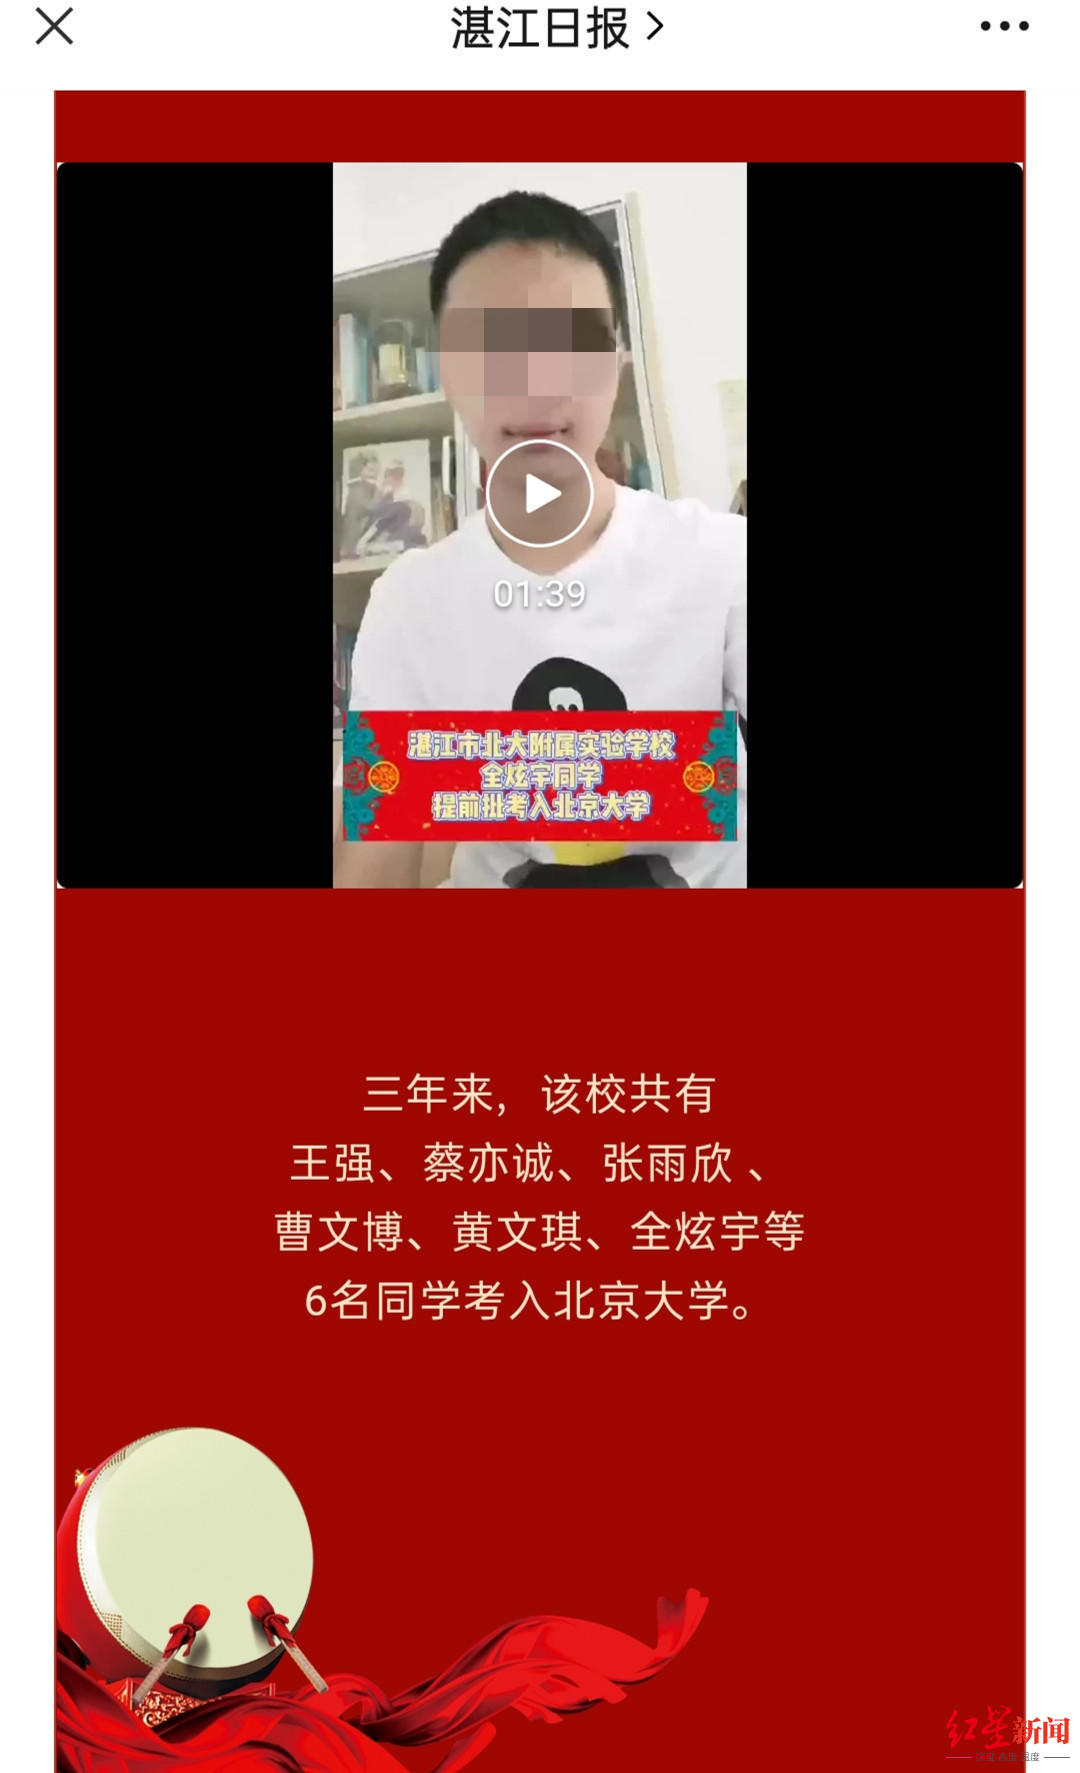 ↑全炫宇曾为湛江市北大附属实验学校录制的视频